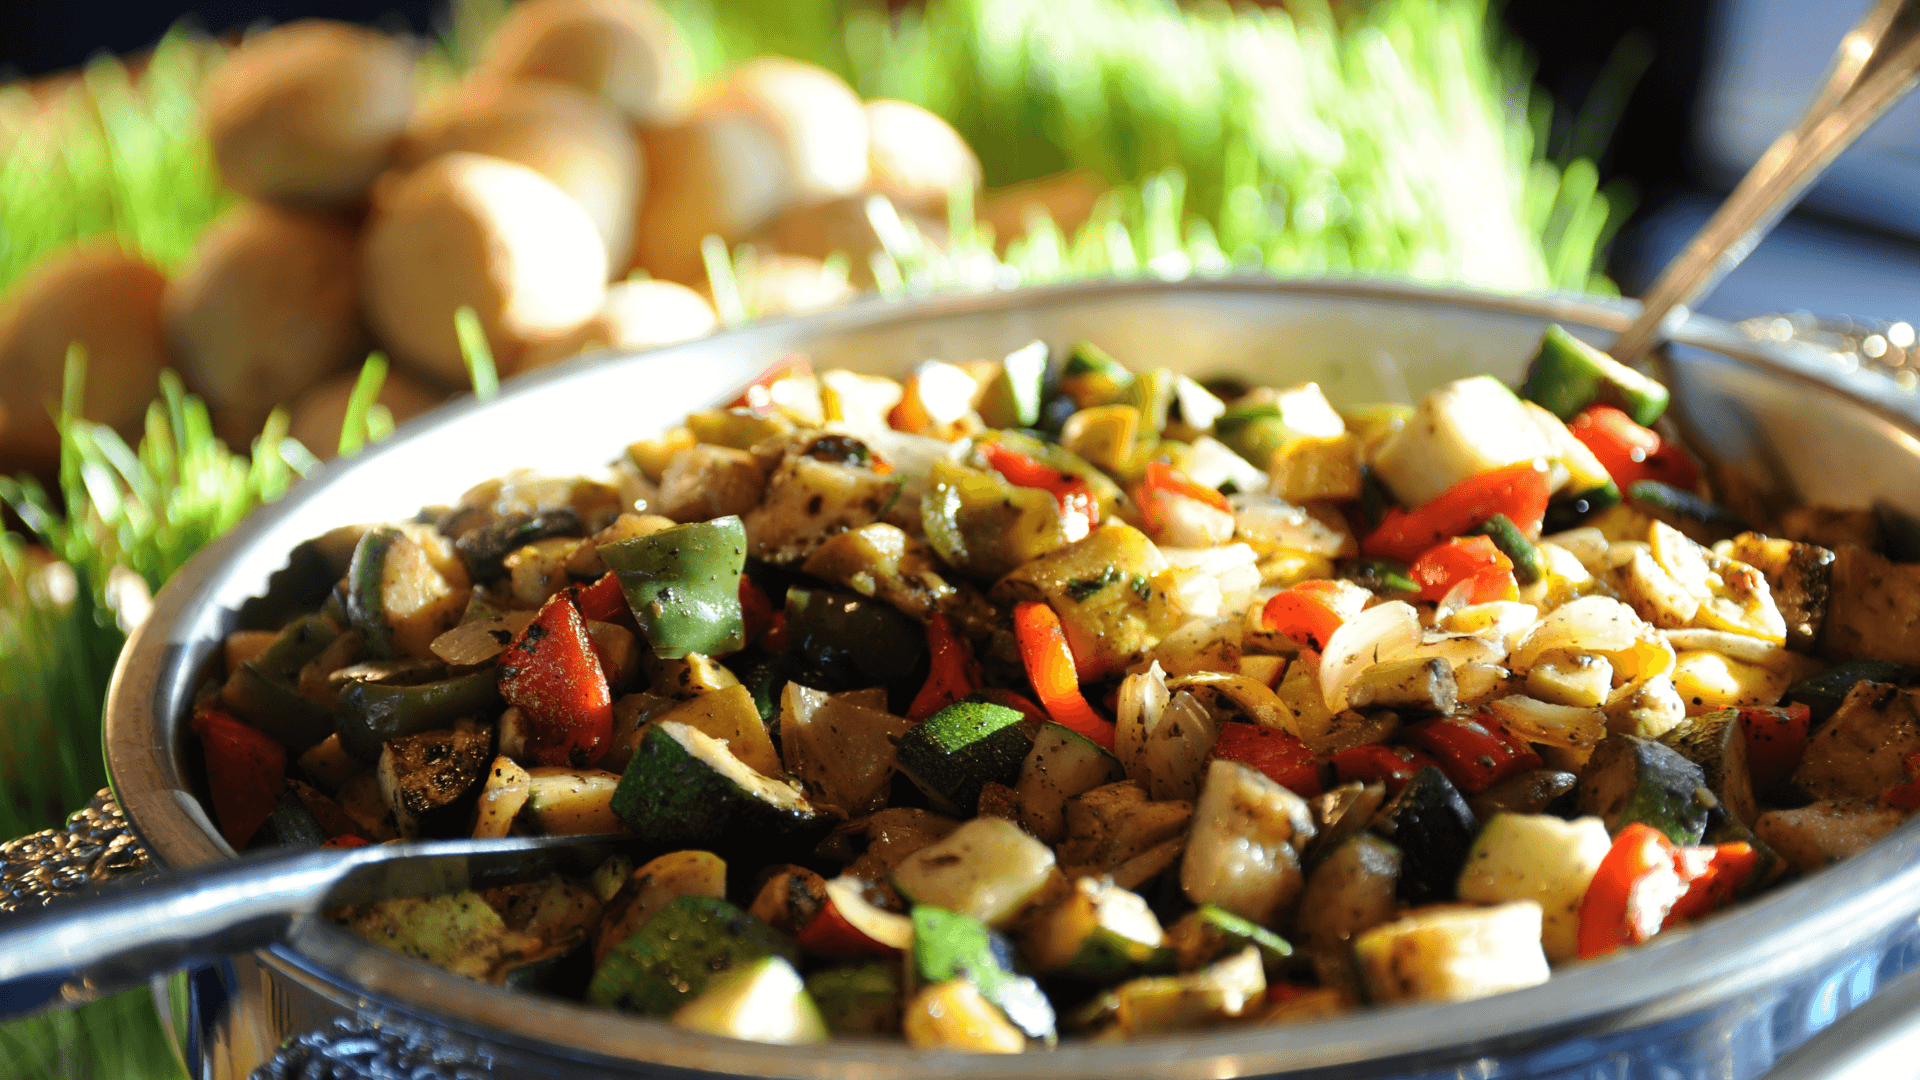 Repas végétarien composé de pâtes et aubergines